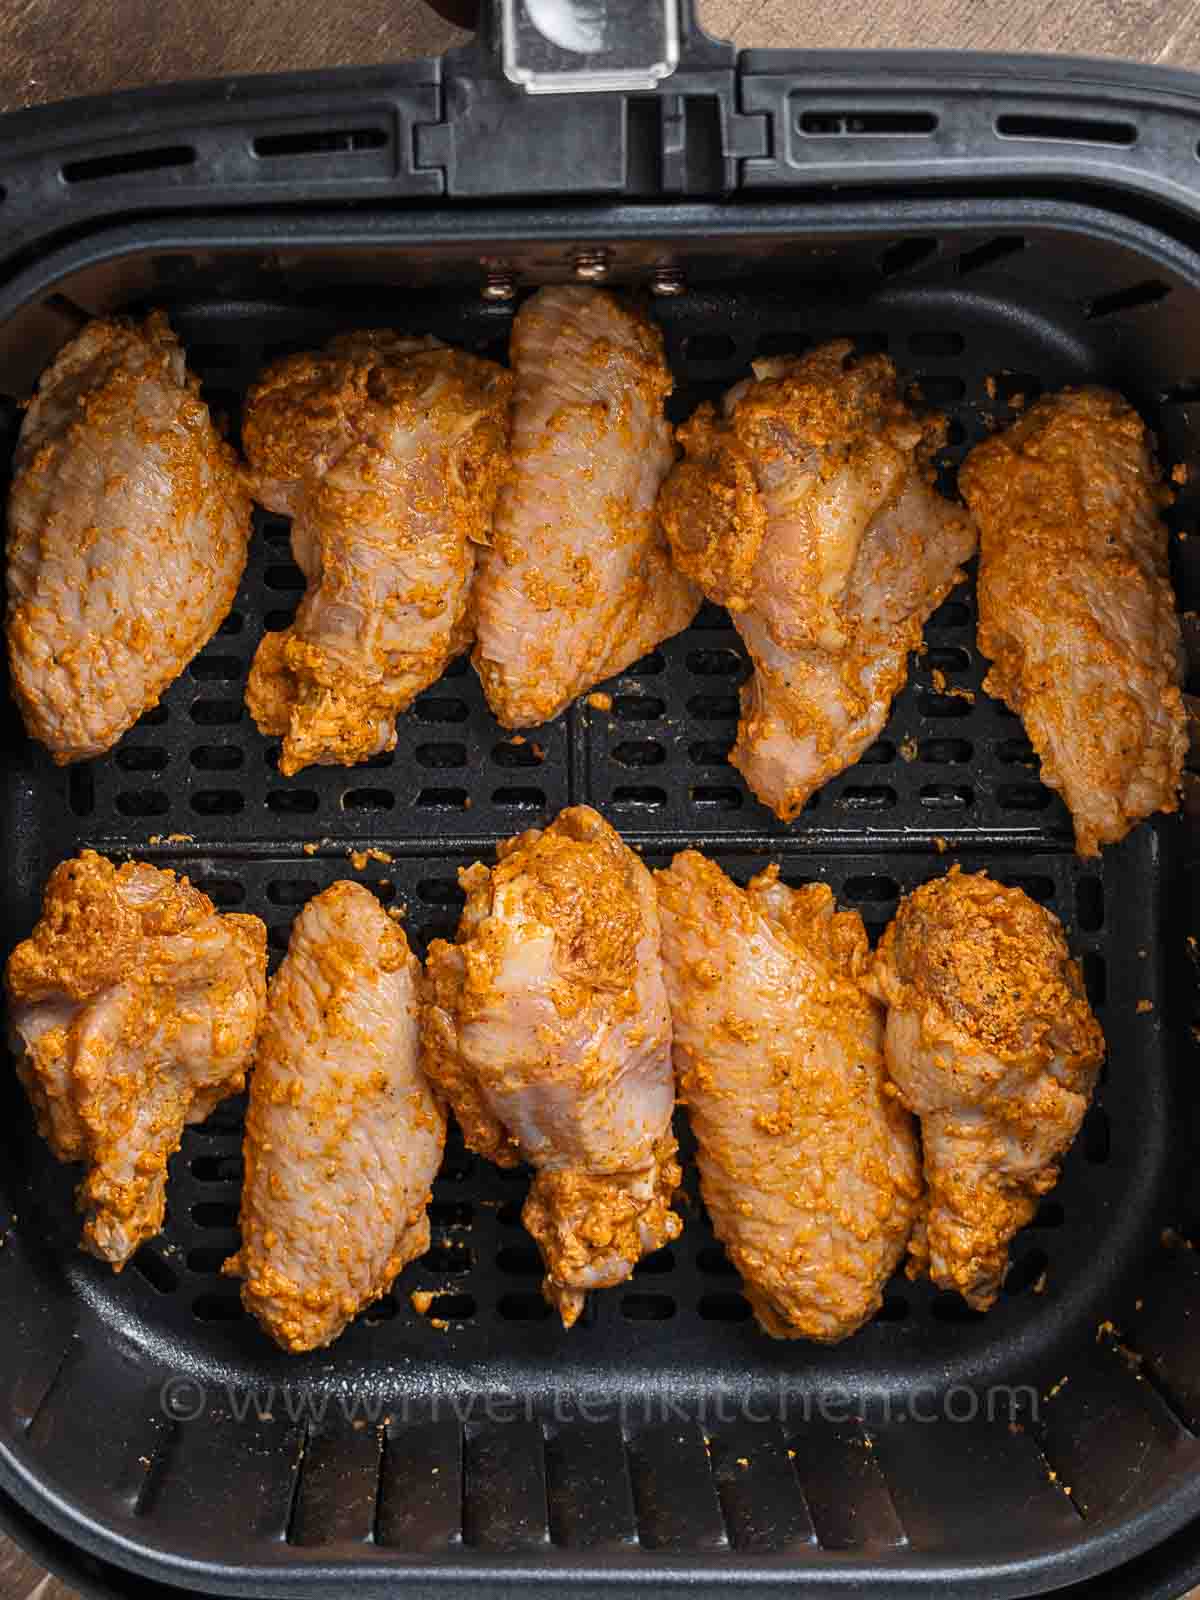 chicken wings coated in seasonings.